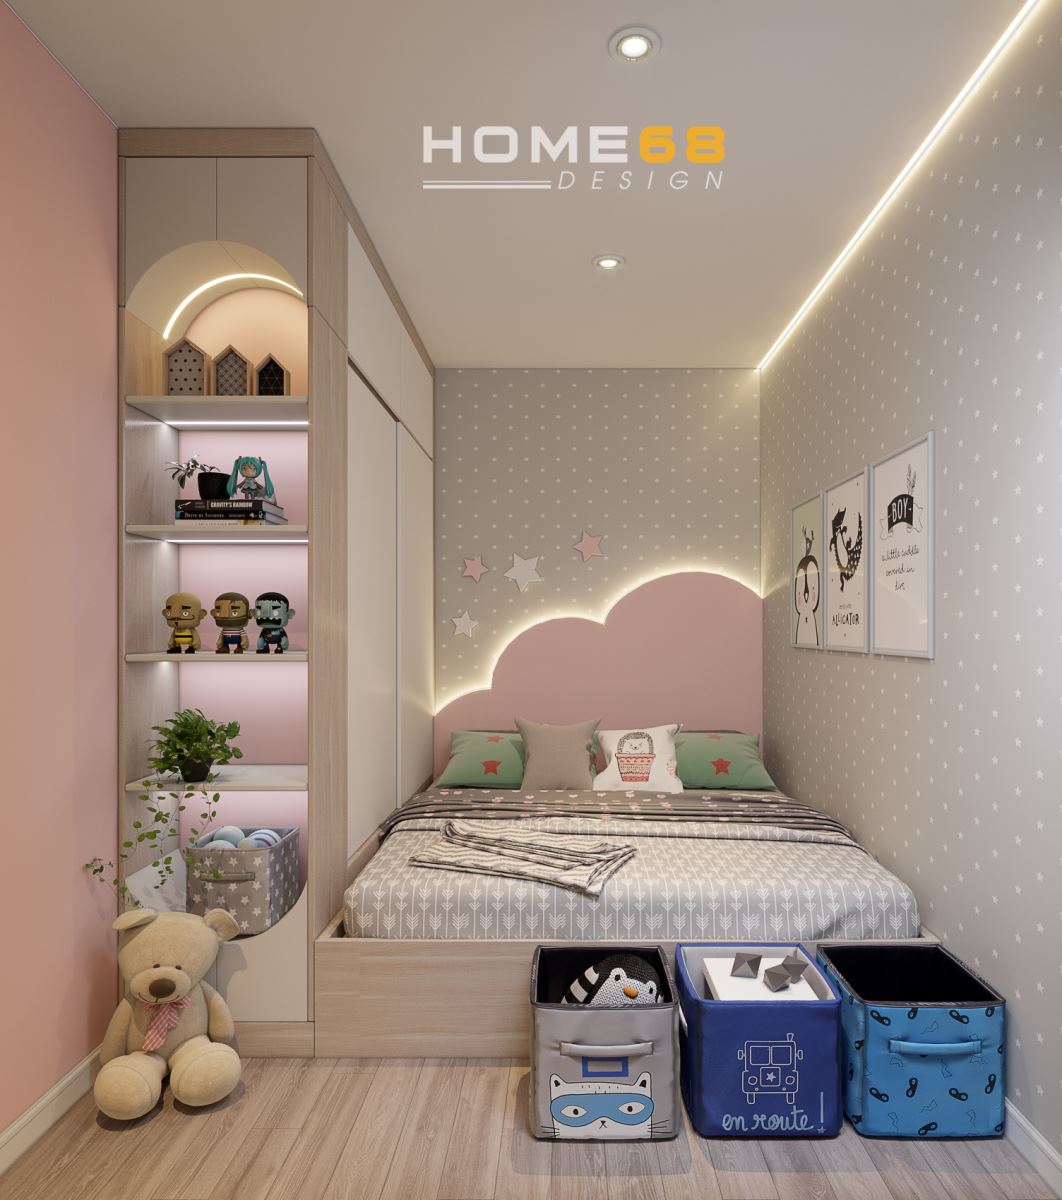 Thiết kế nội thất phòng ngủ con gái đáng yêu, nhẹ nhàng- HOME68